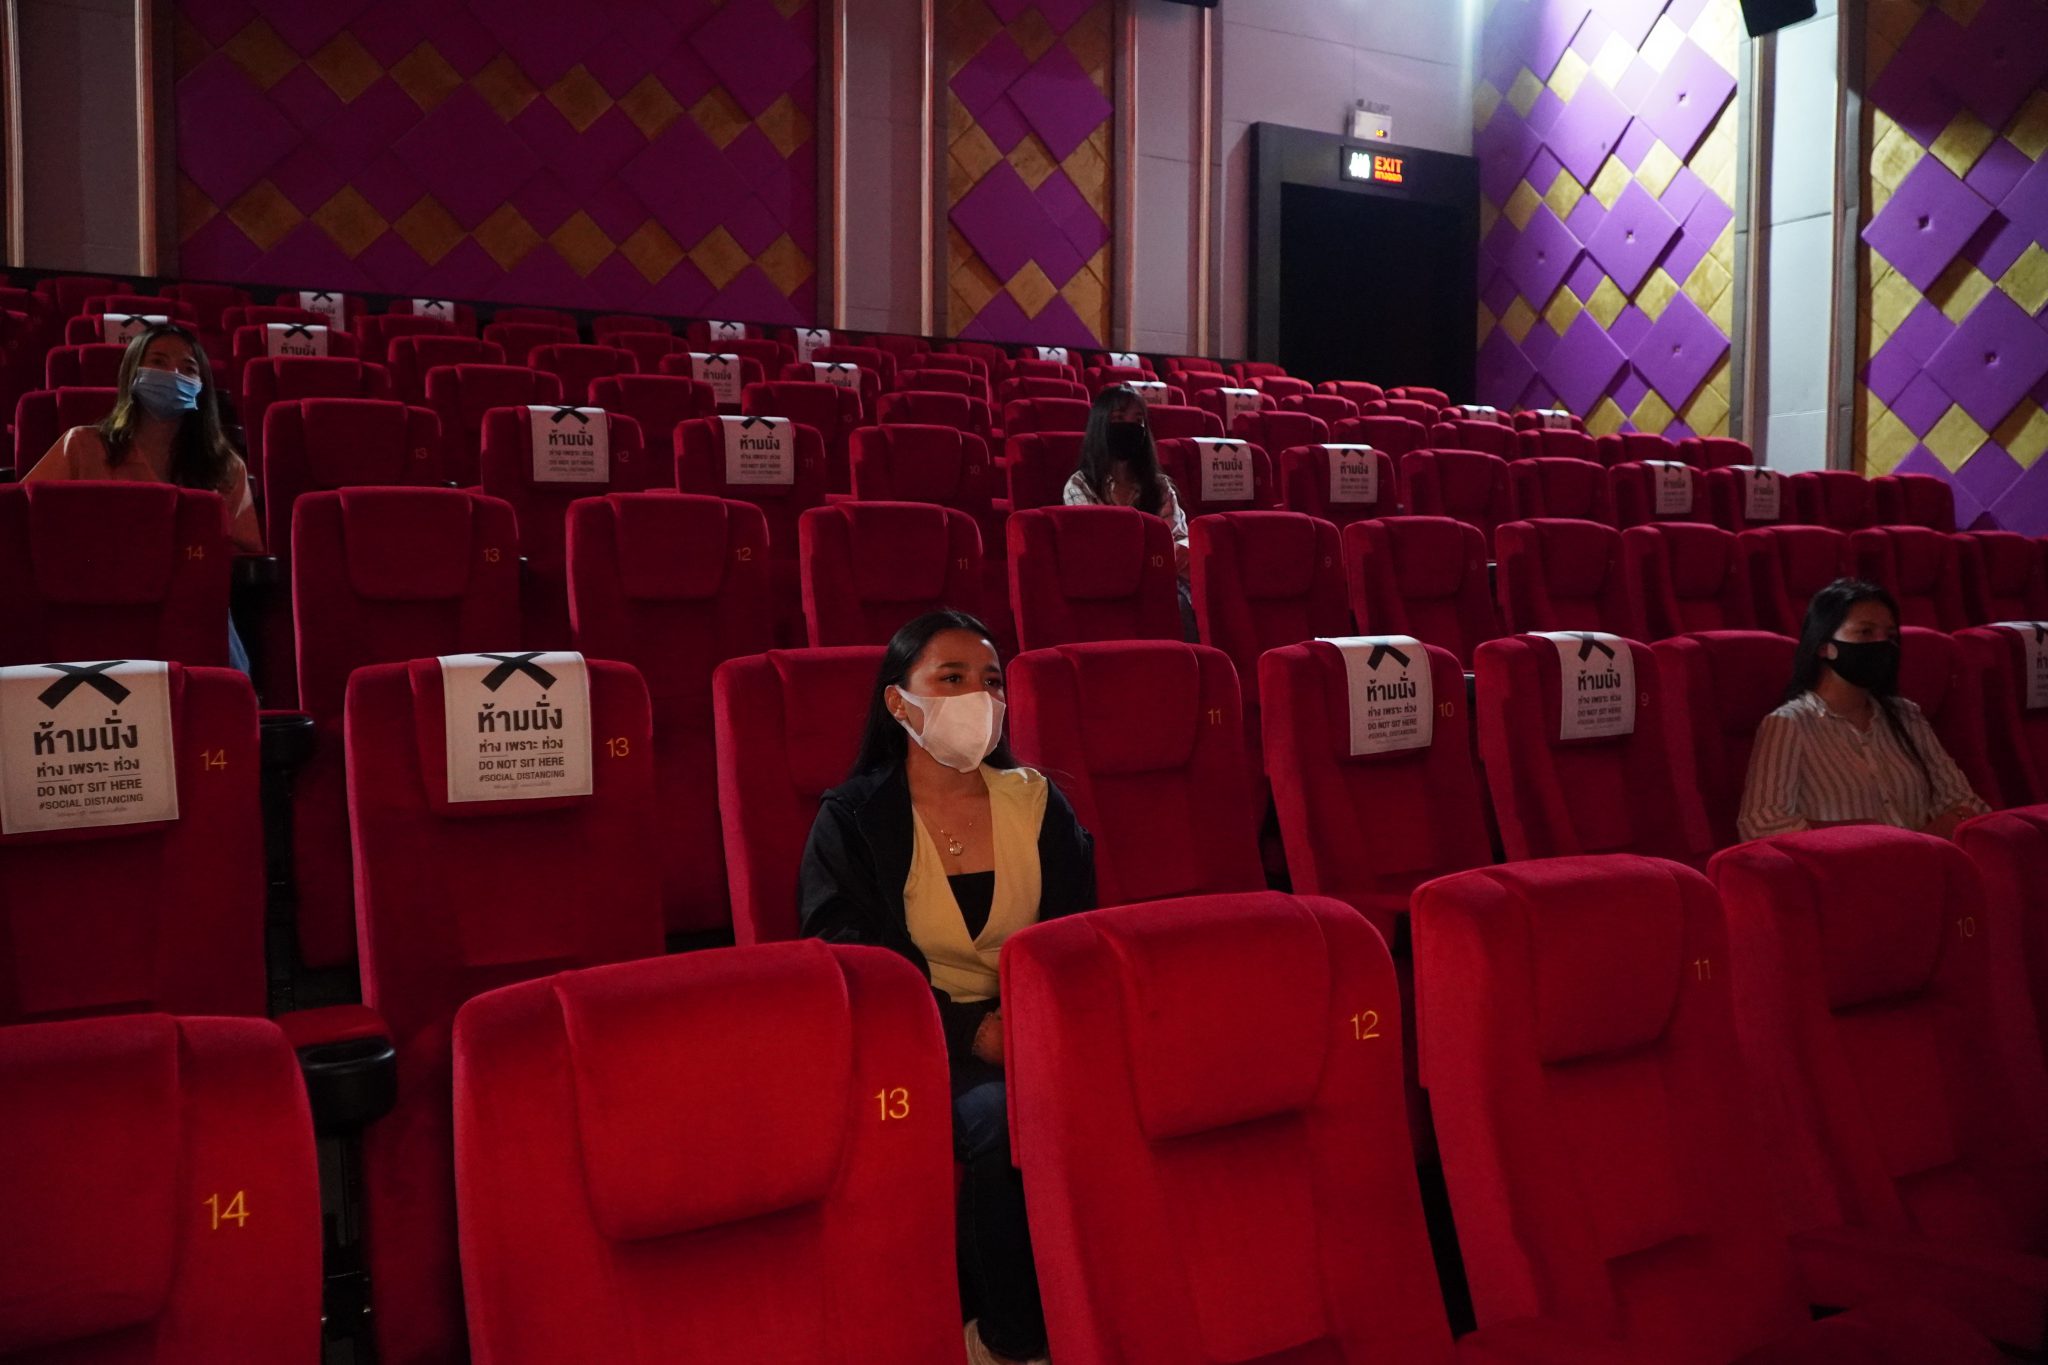 นส่วนของพื้นที่ด้านในโรงภาพยนตร์ จะมีการจัดที่นั่งในรูปแบบ 2 ที่นั่งเว้น 2 ที่นั่ง ทั้งนี้ยังเว้นแถวระหว่างแถว